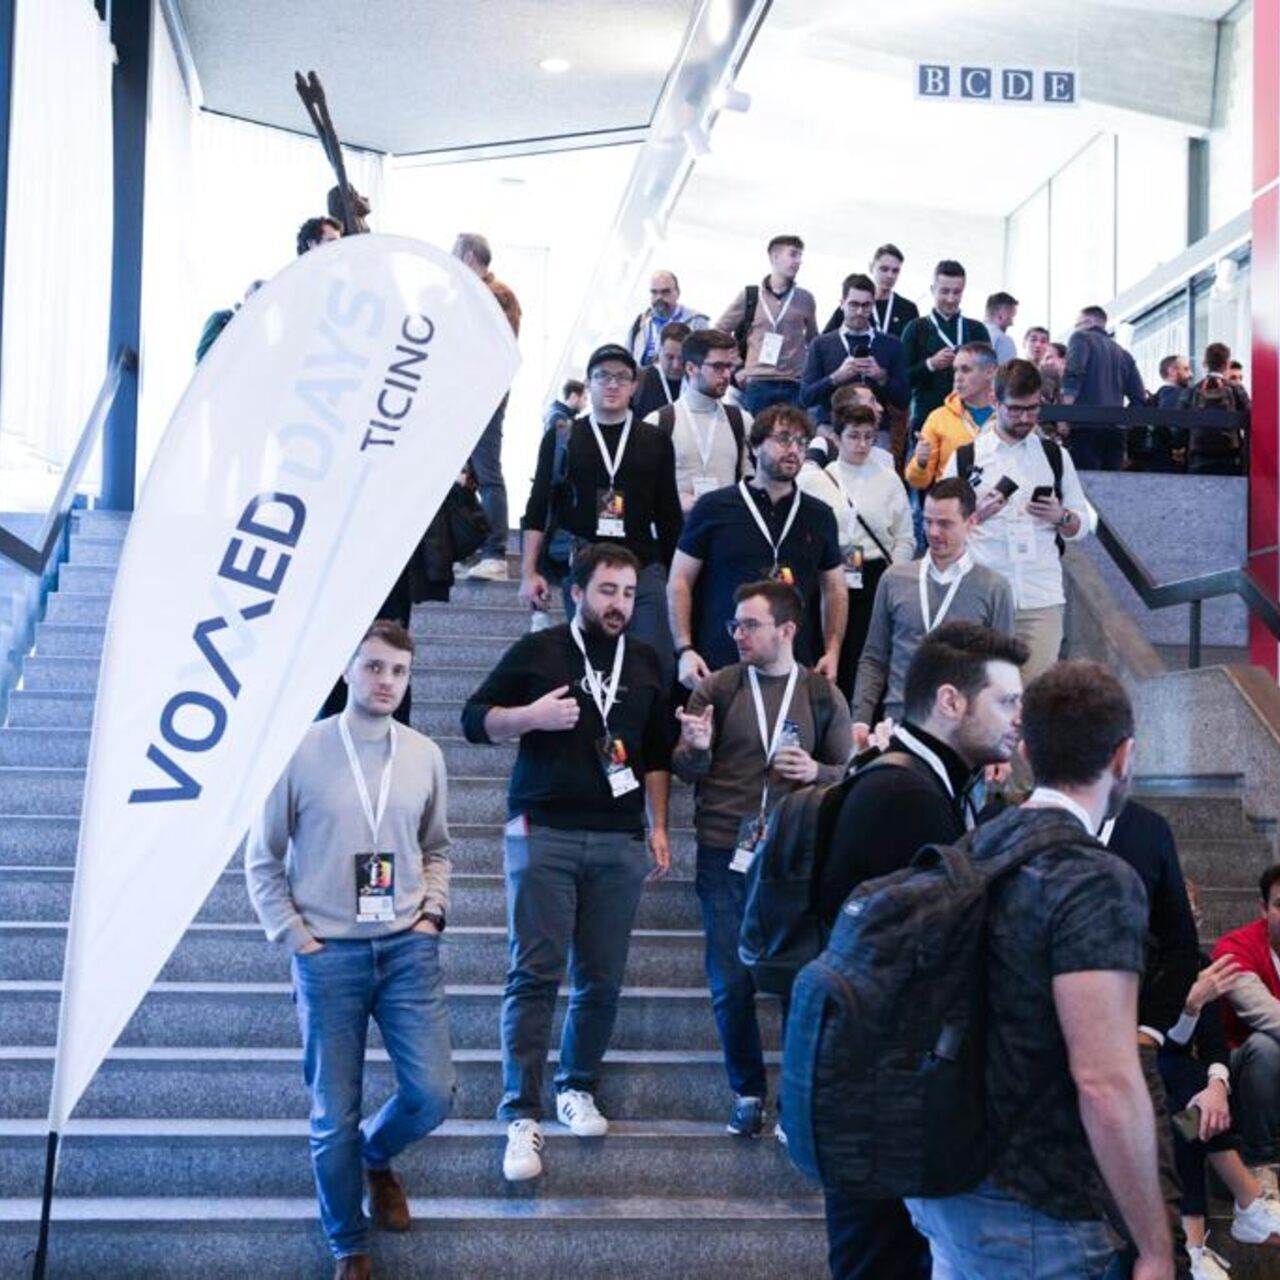 Voxxed Days Ticino: 2024-udgaven på USI-SUPSI East Campus i Lugano tiltrak 400 deltagere og talere fra syv forskellige lande